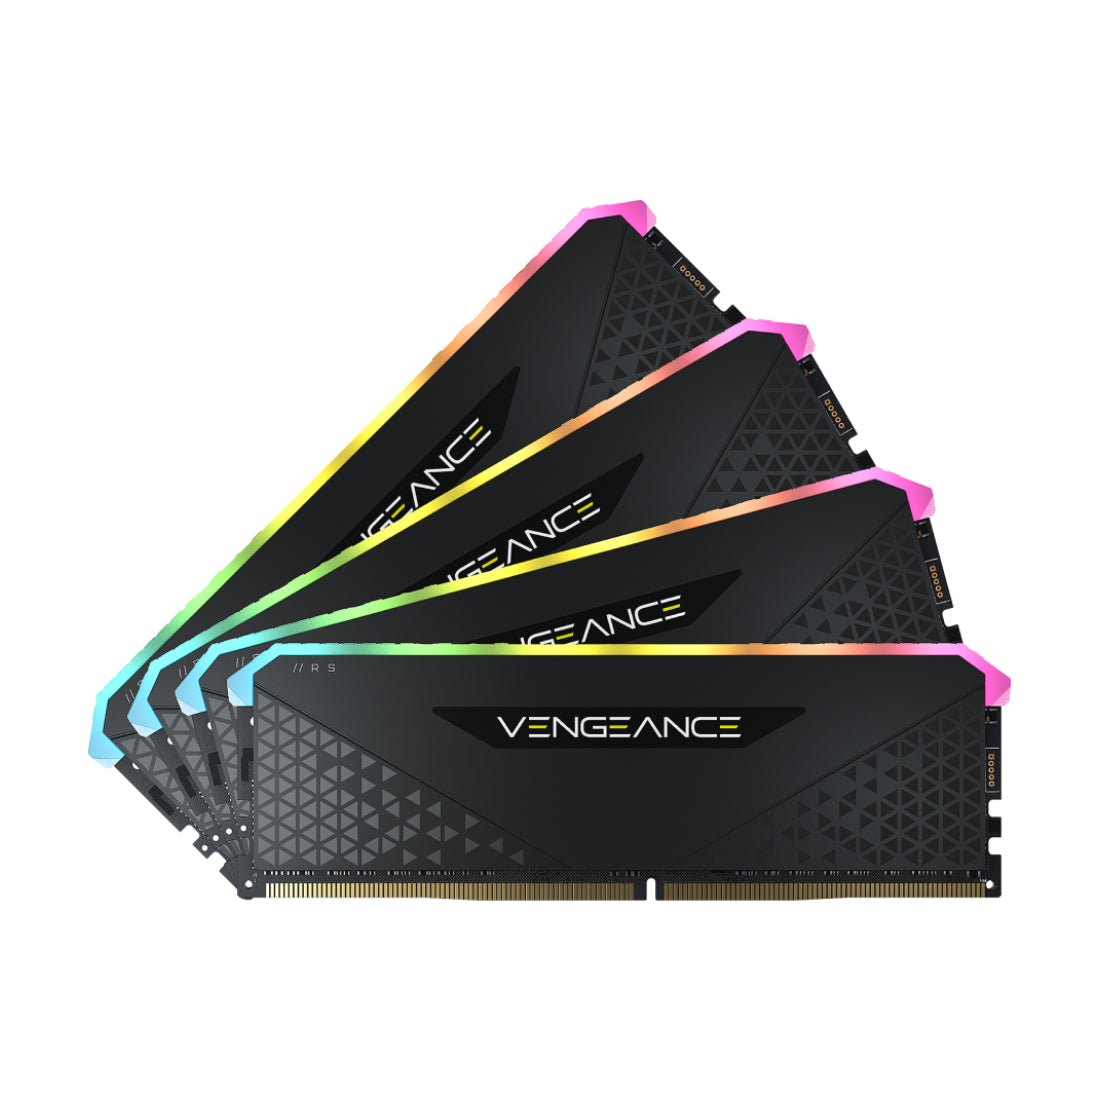 Corsair Vengeance RGB RS 128GB (4x 32GB) DDR4 3200MHz - Black - Store 974 | ستور ٩٧٤